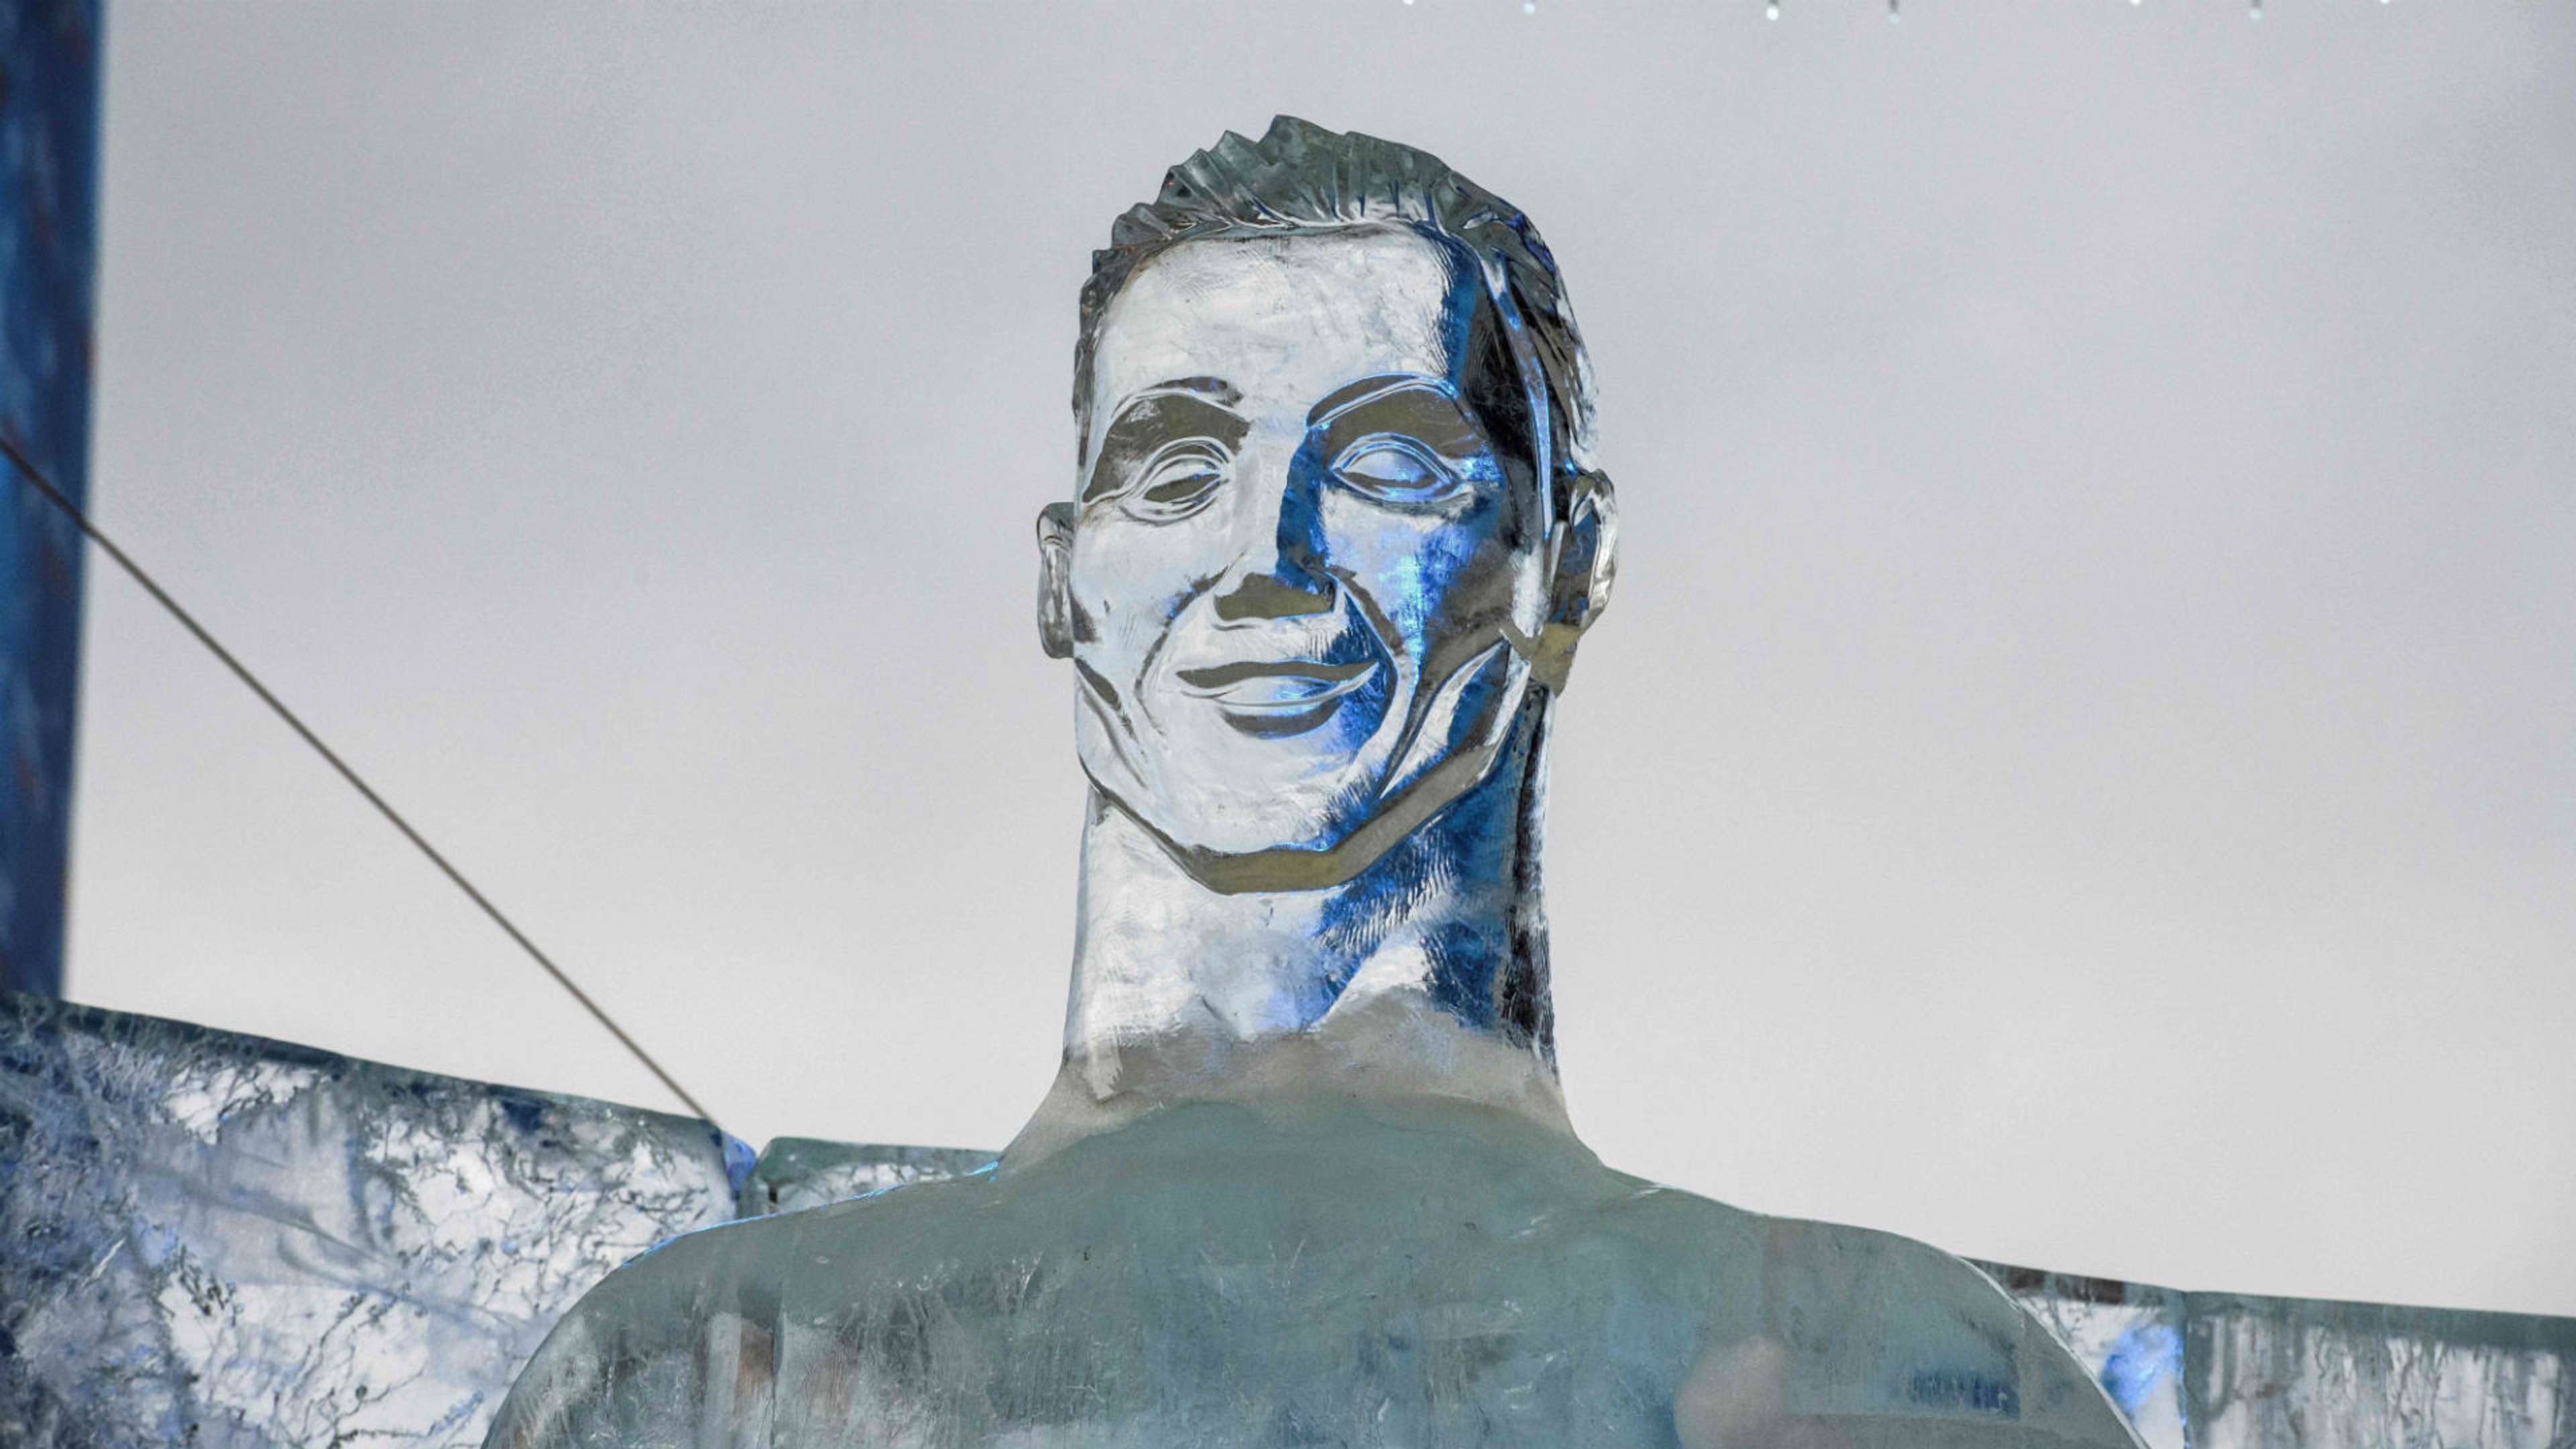 Cristiano Ronaldo ice sculpture Russia World Cup